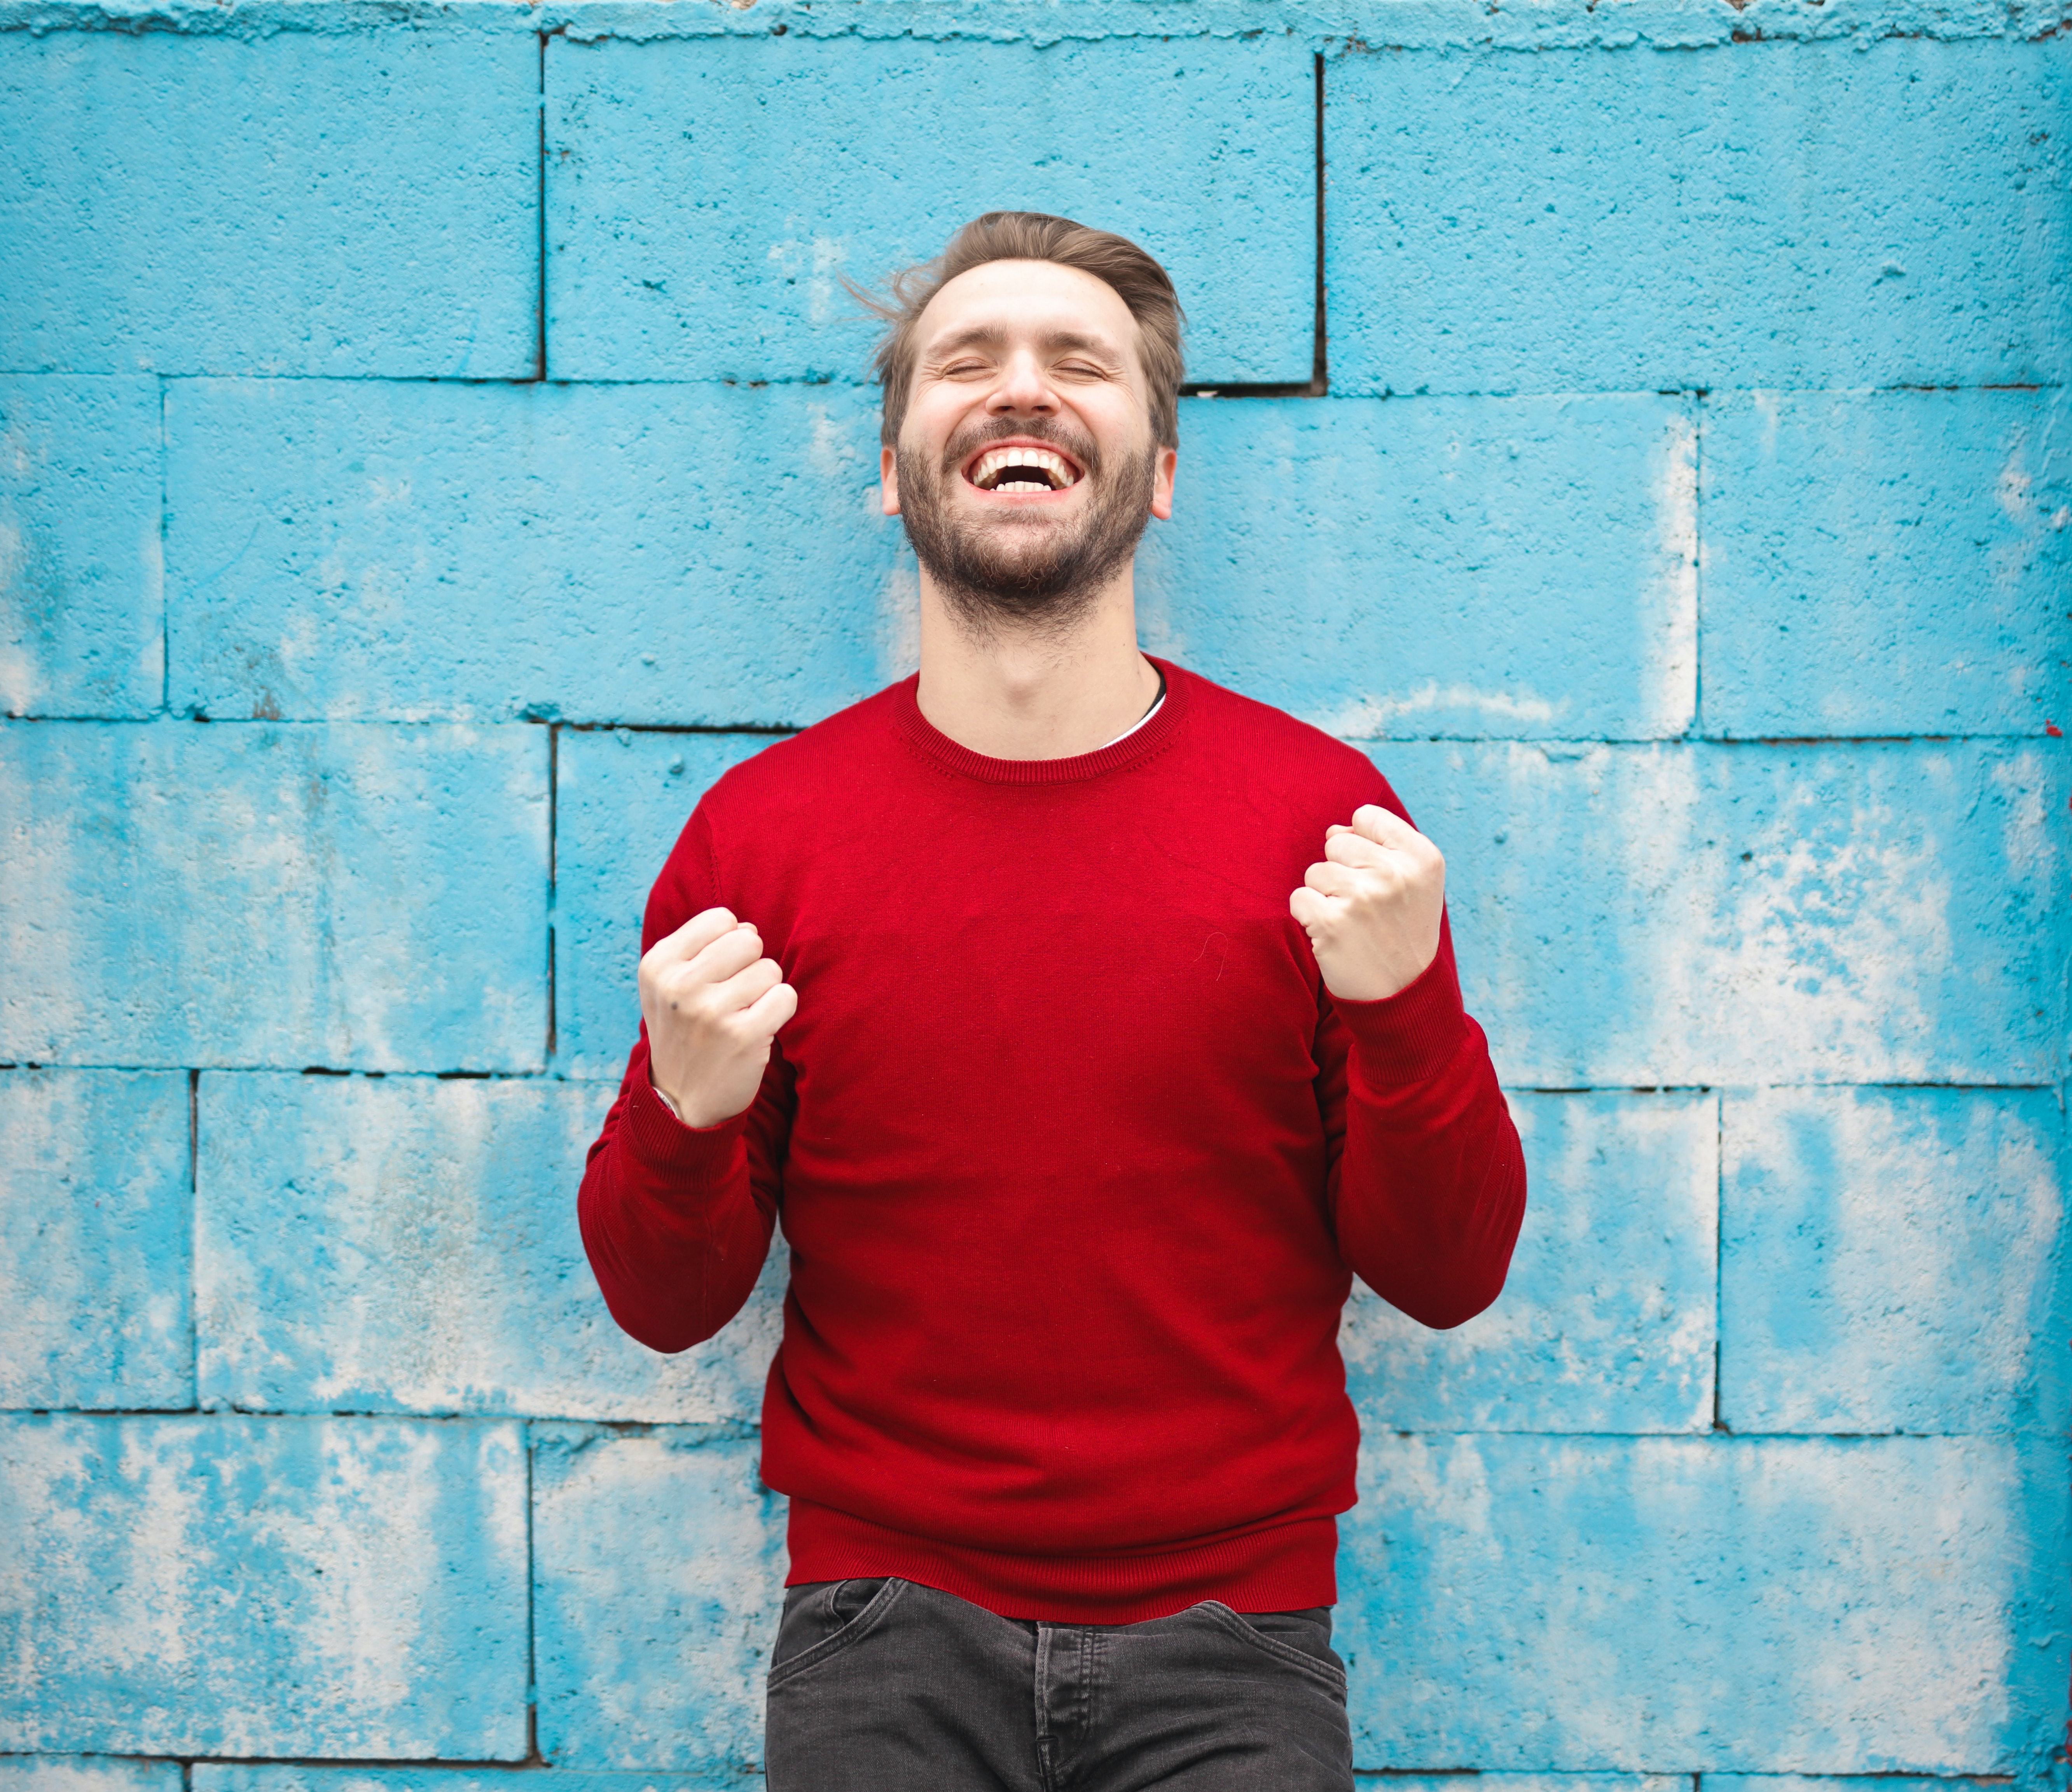 En la imagen se muestra un hombre con un jersey rojo y los puños cerrados delante de un muro de ladrillos azules mostrando satisfacción con una expresión de alegría